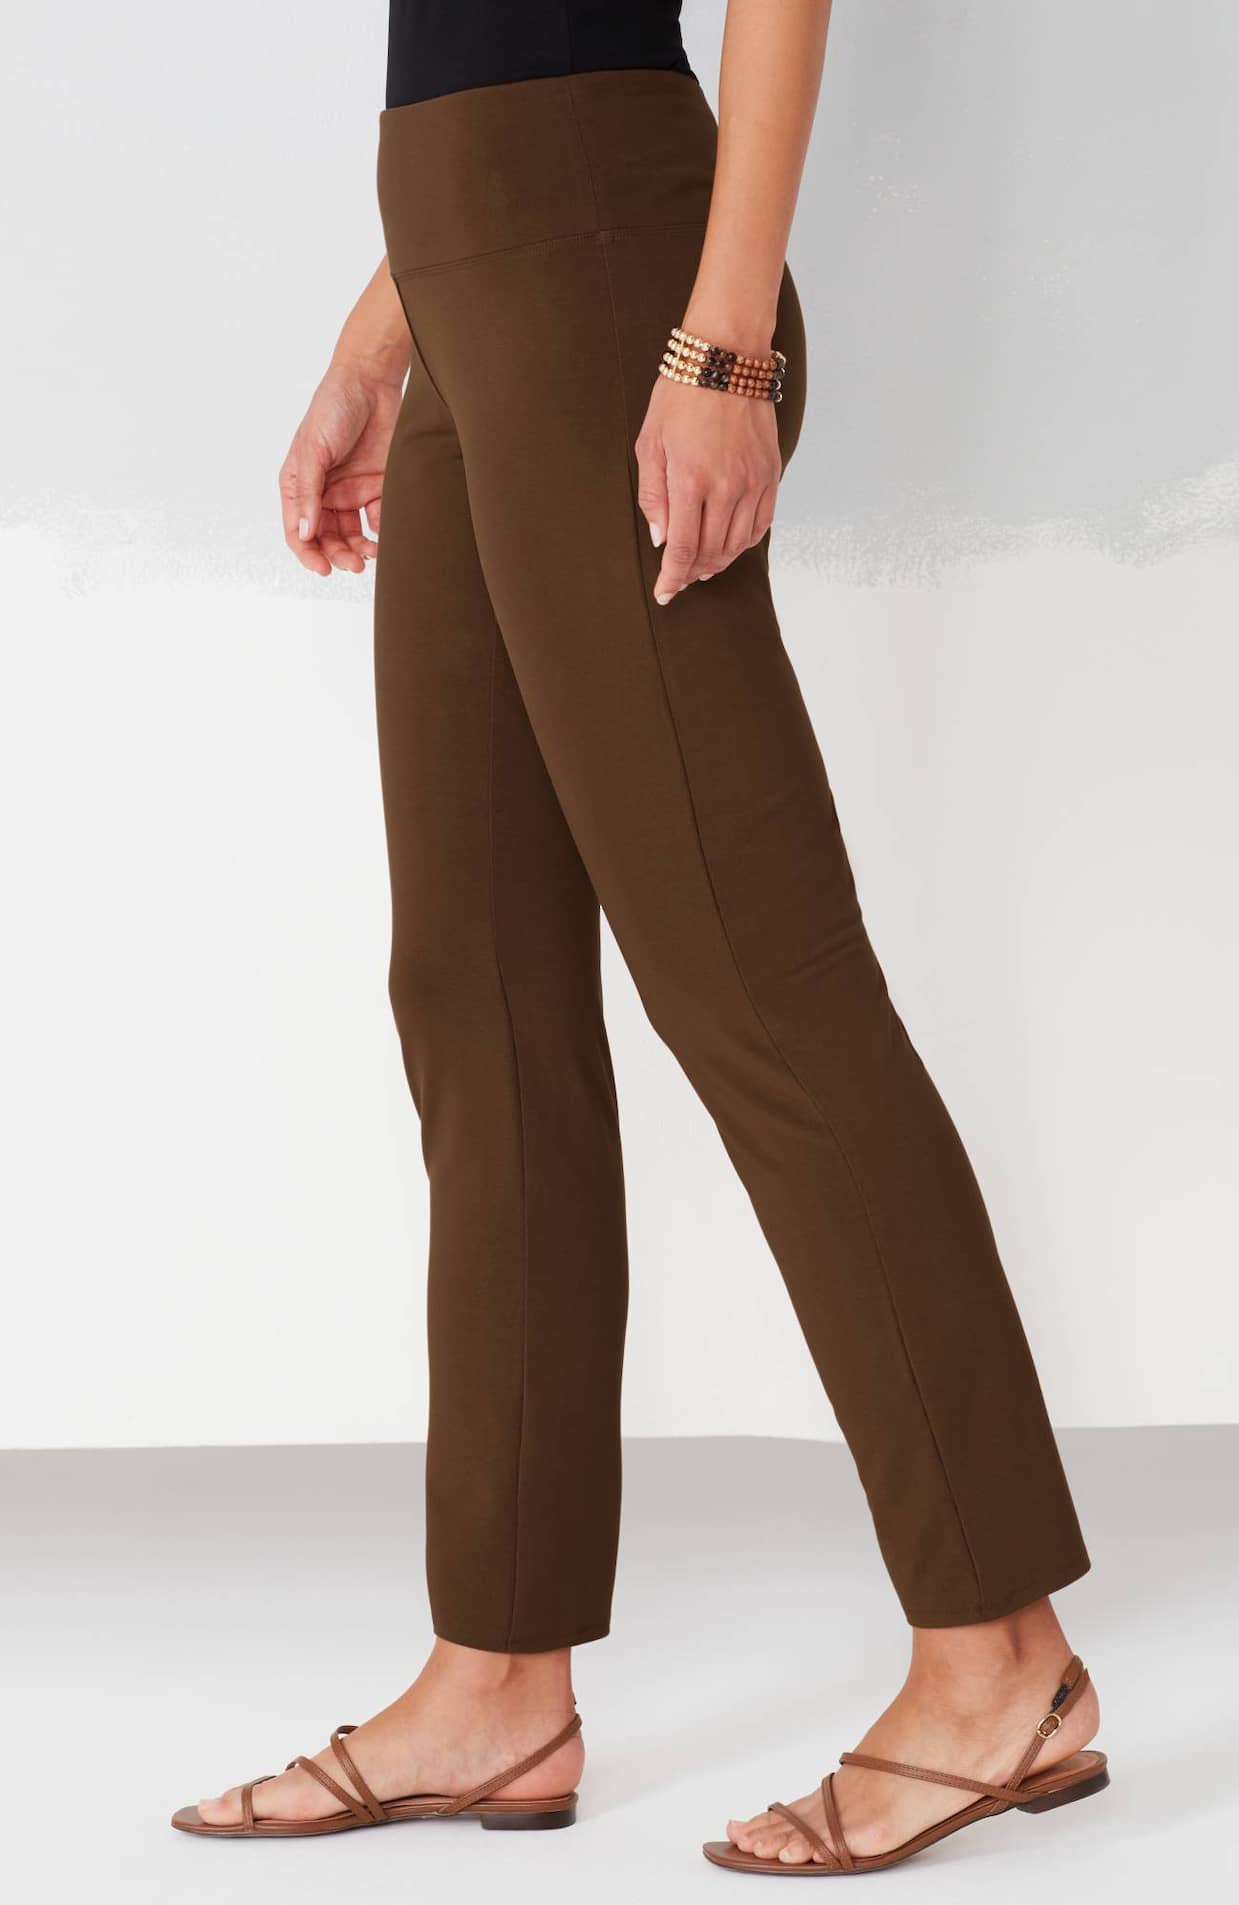 J.Jill Black Casual Pants Size L - 64% off